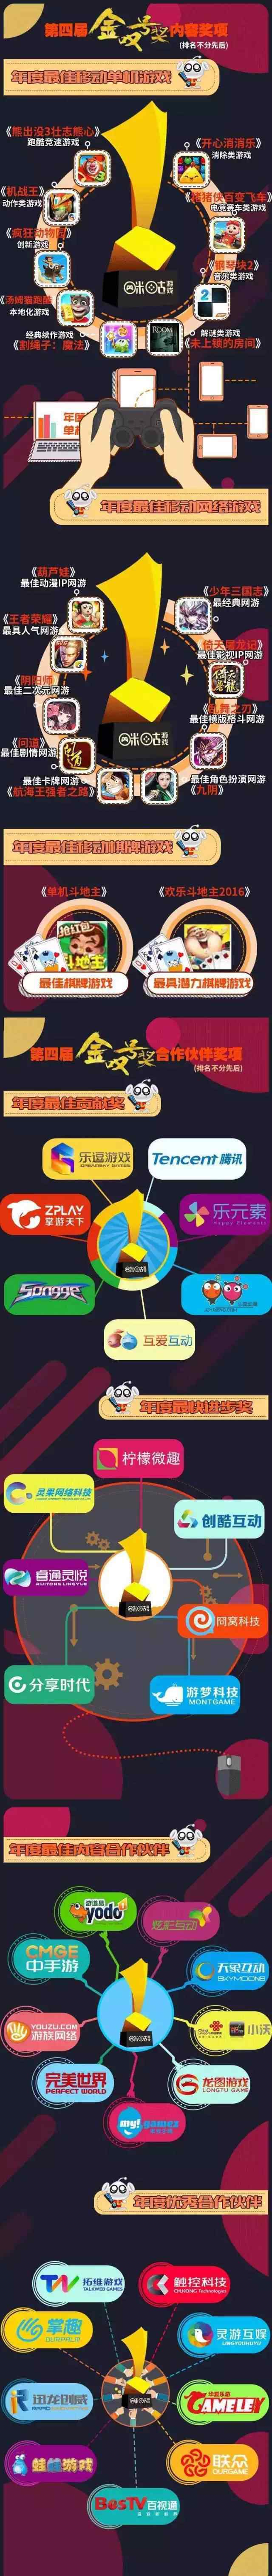 咪咕游戏 中国移动咪咕游戏2016年度数据报告